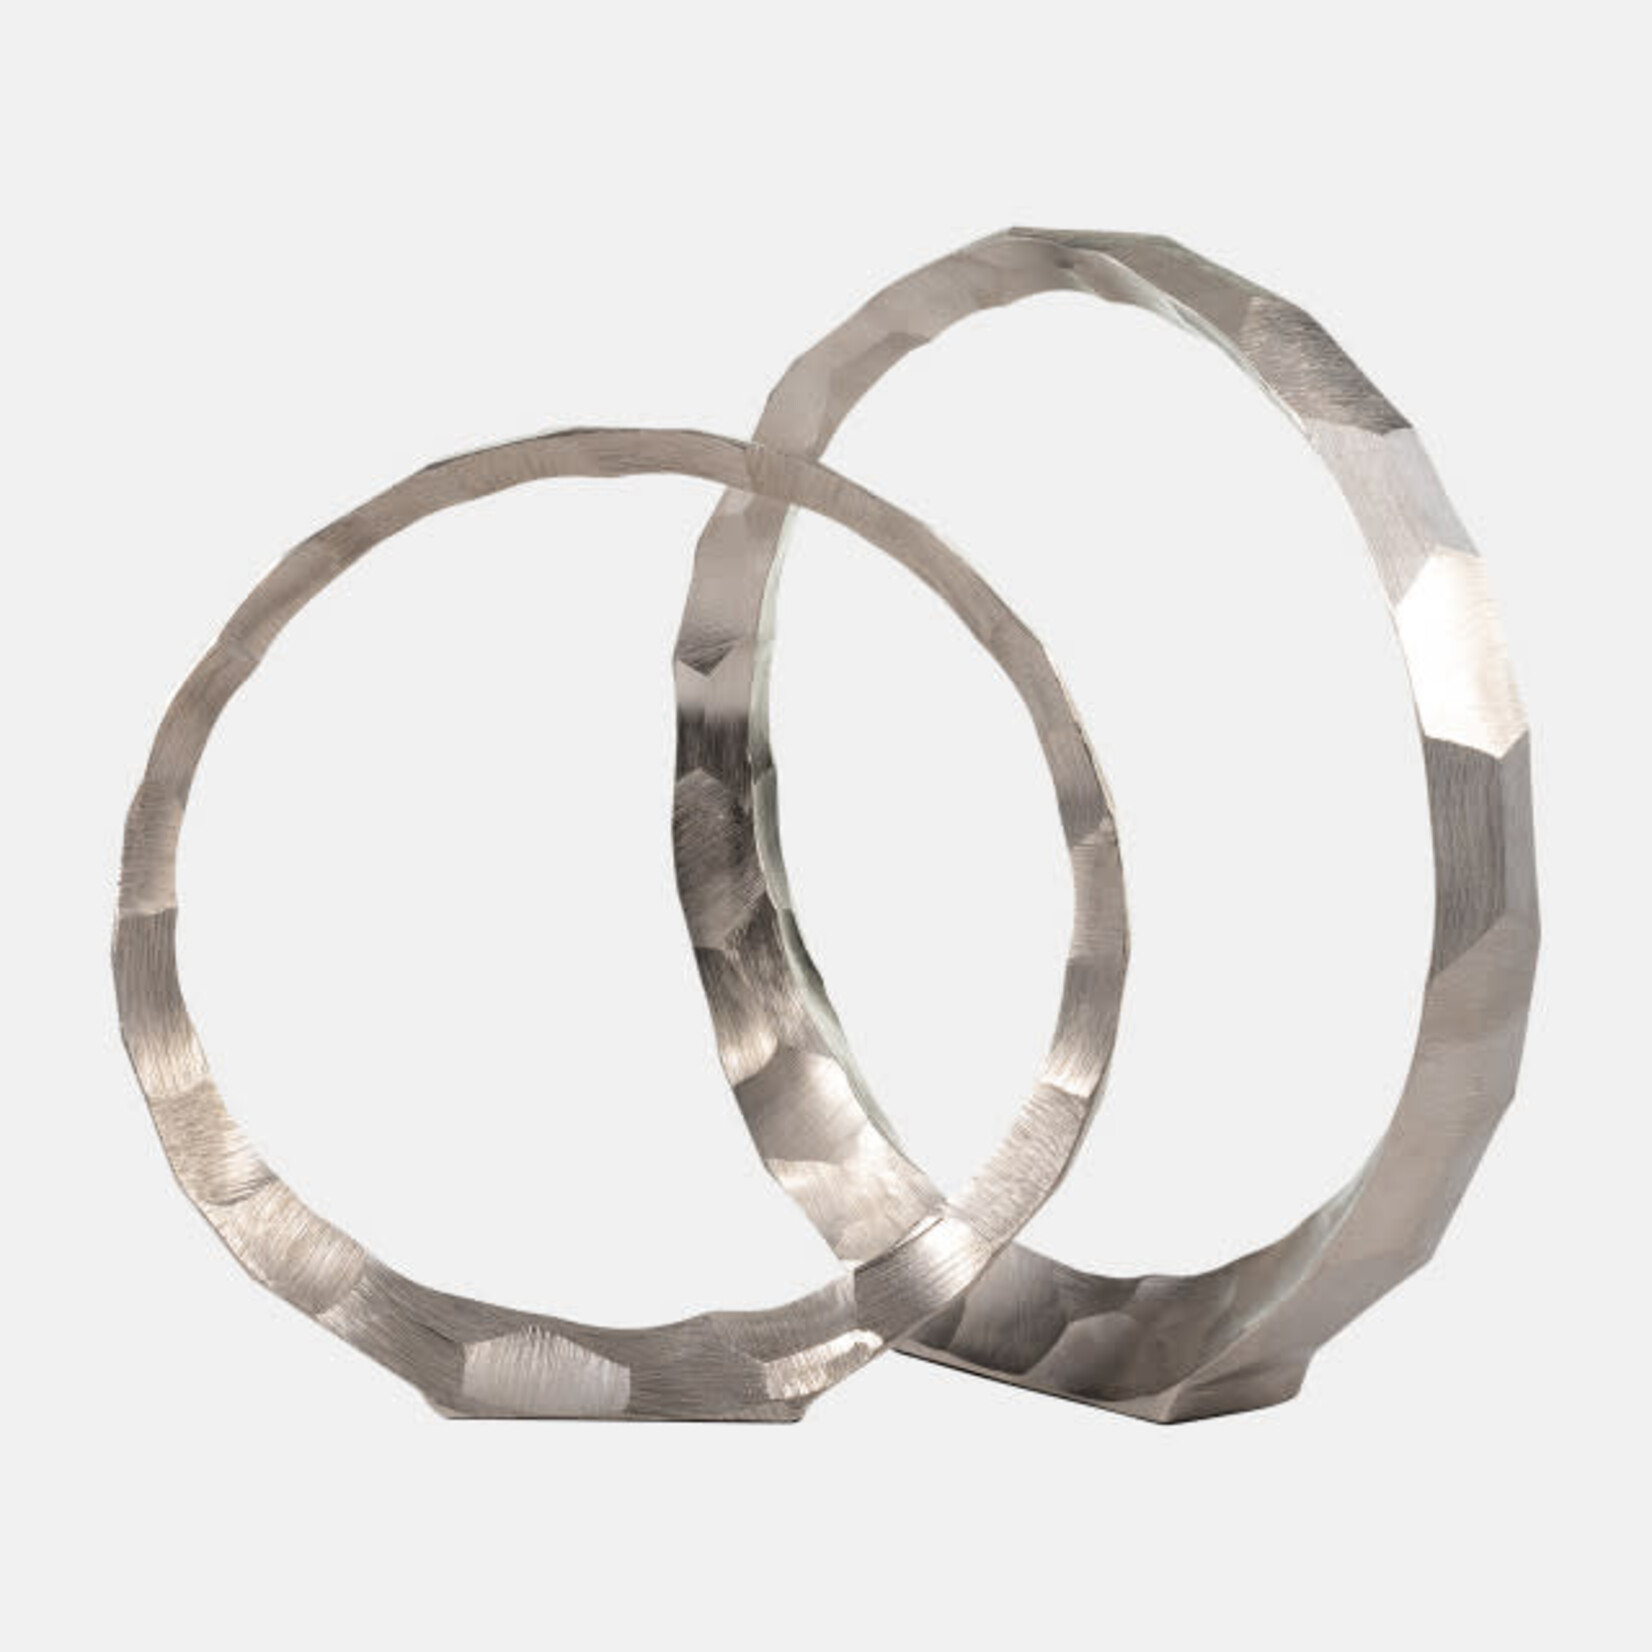 Mickler & Co. Metal Hammered Circle Sculpture - Set of 2